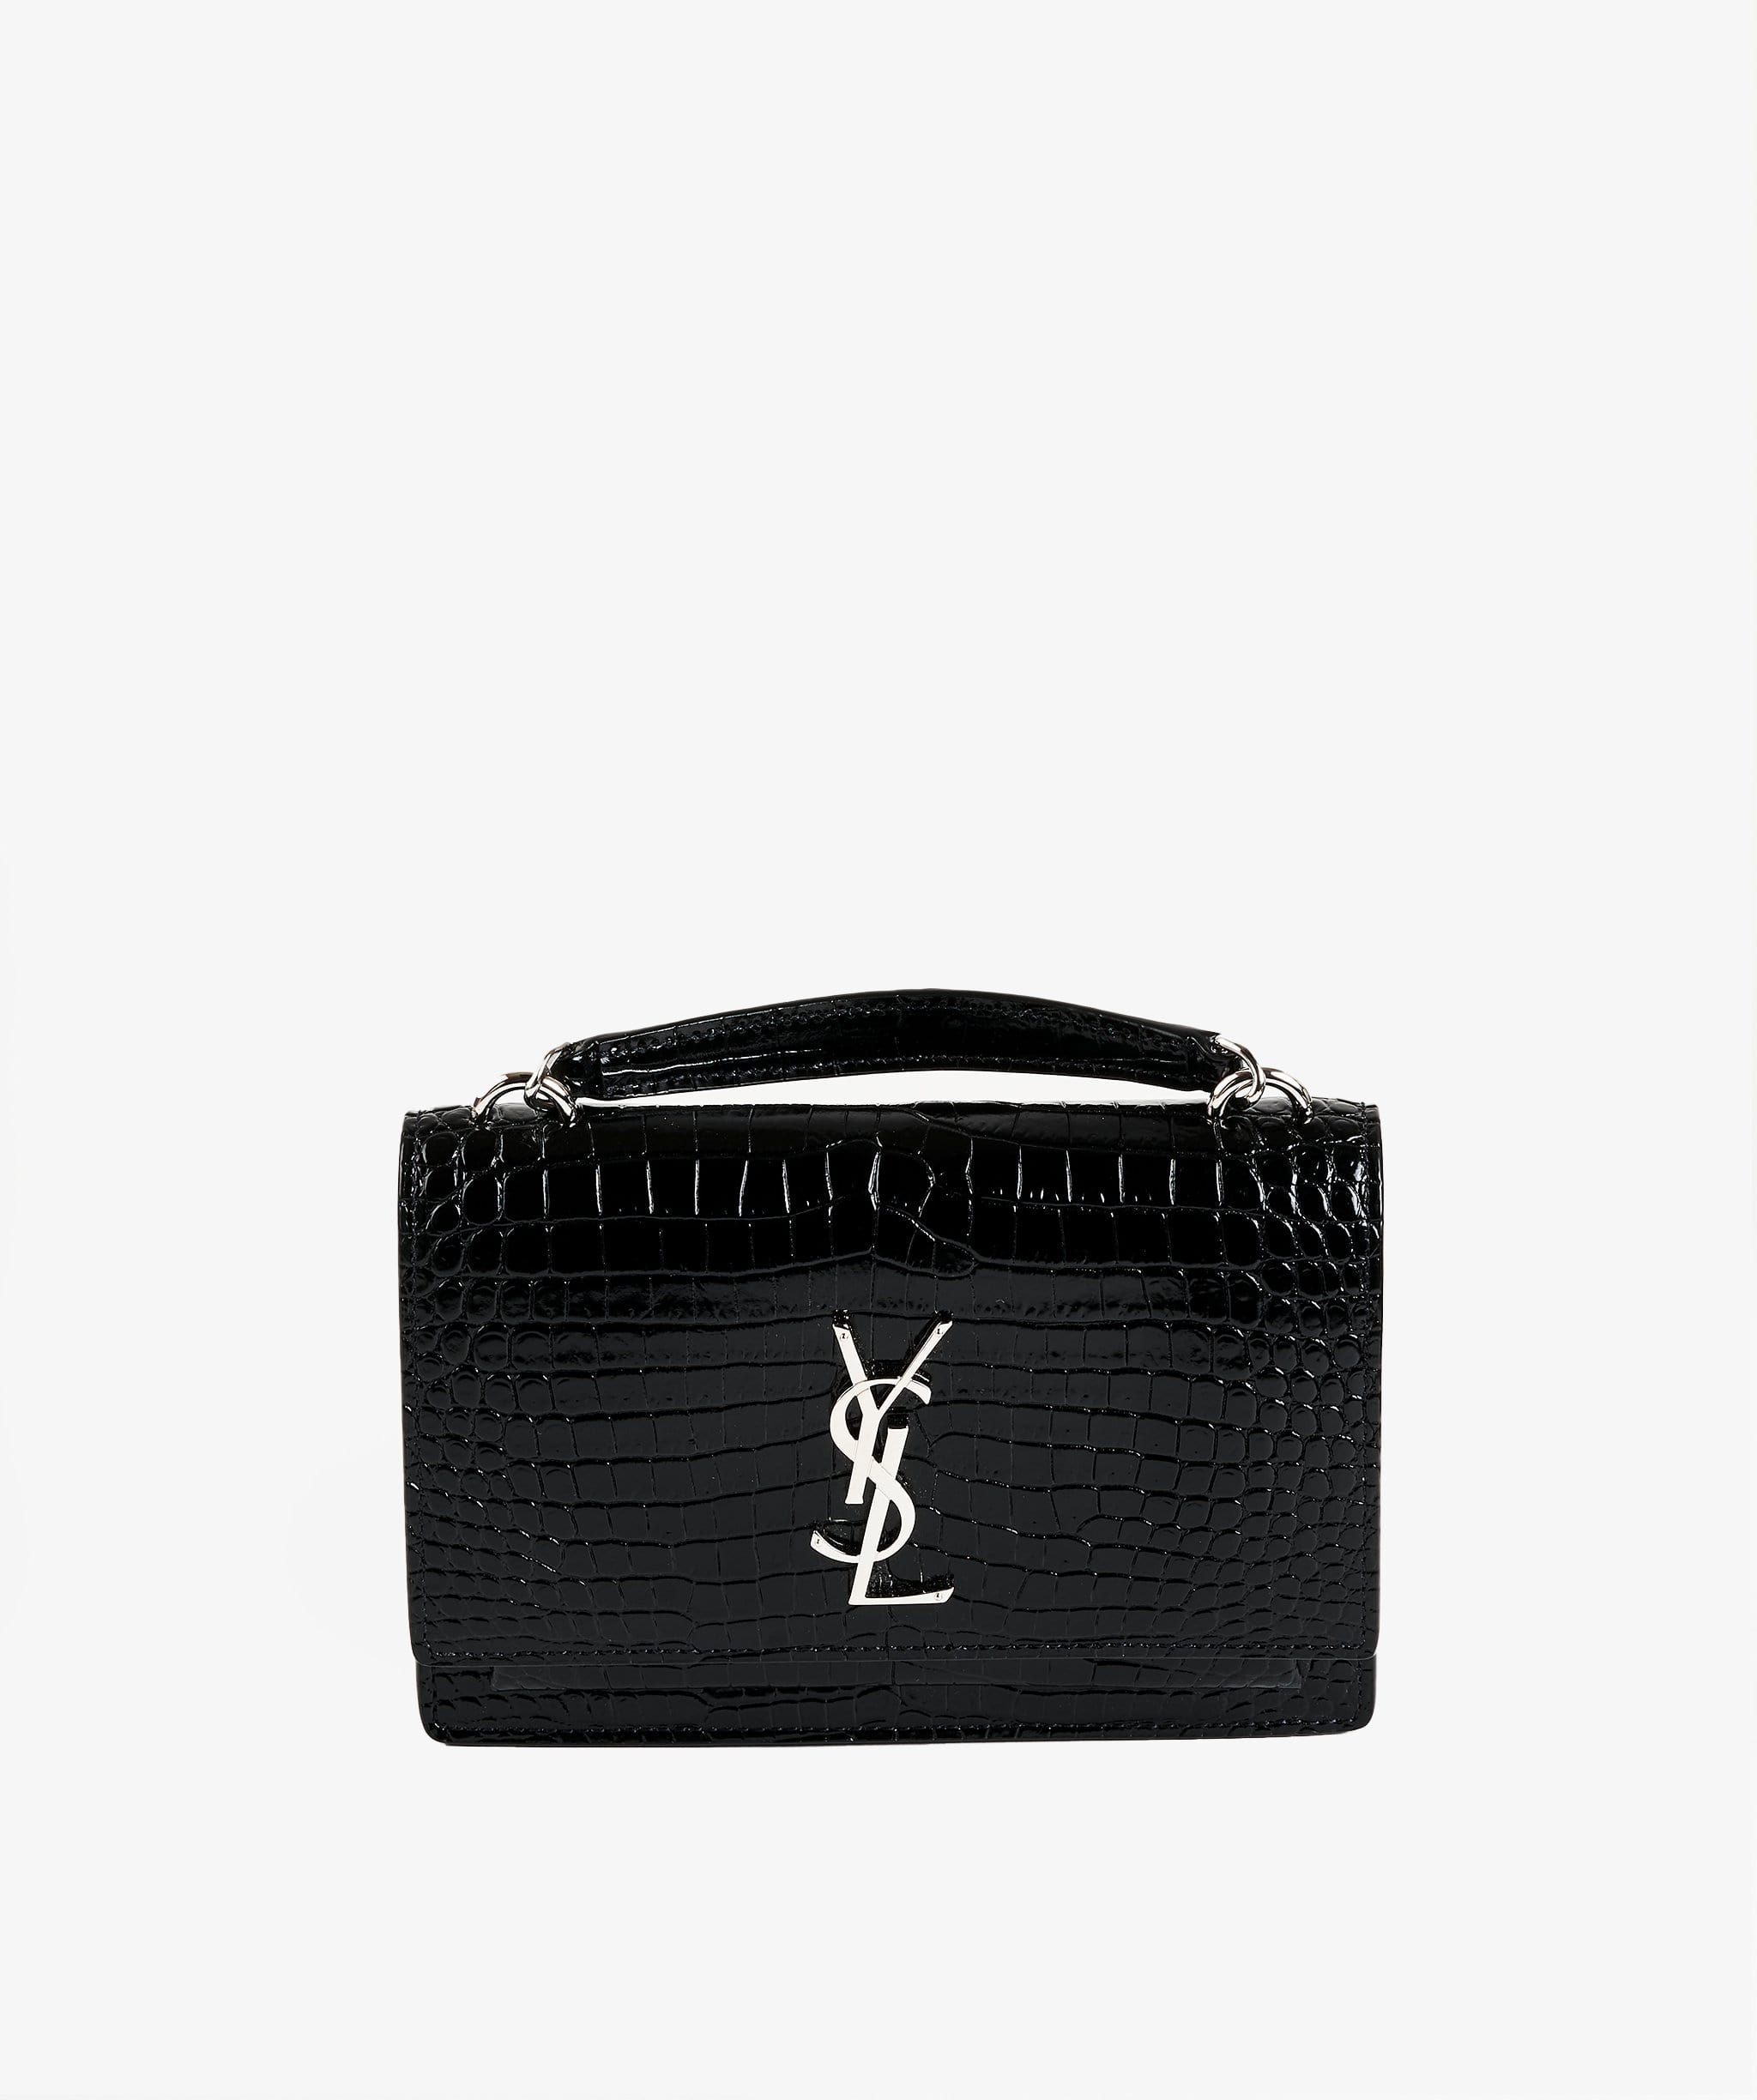 Yves Saint Laurent YSL Sunset bag black